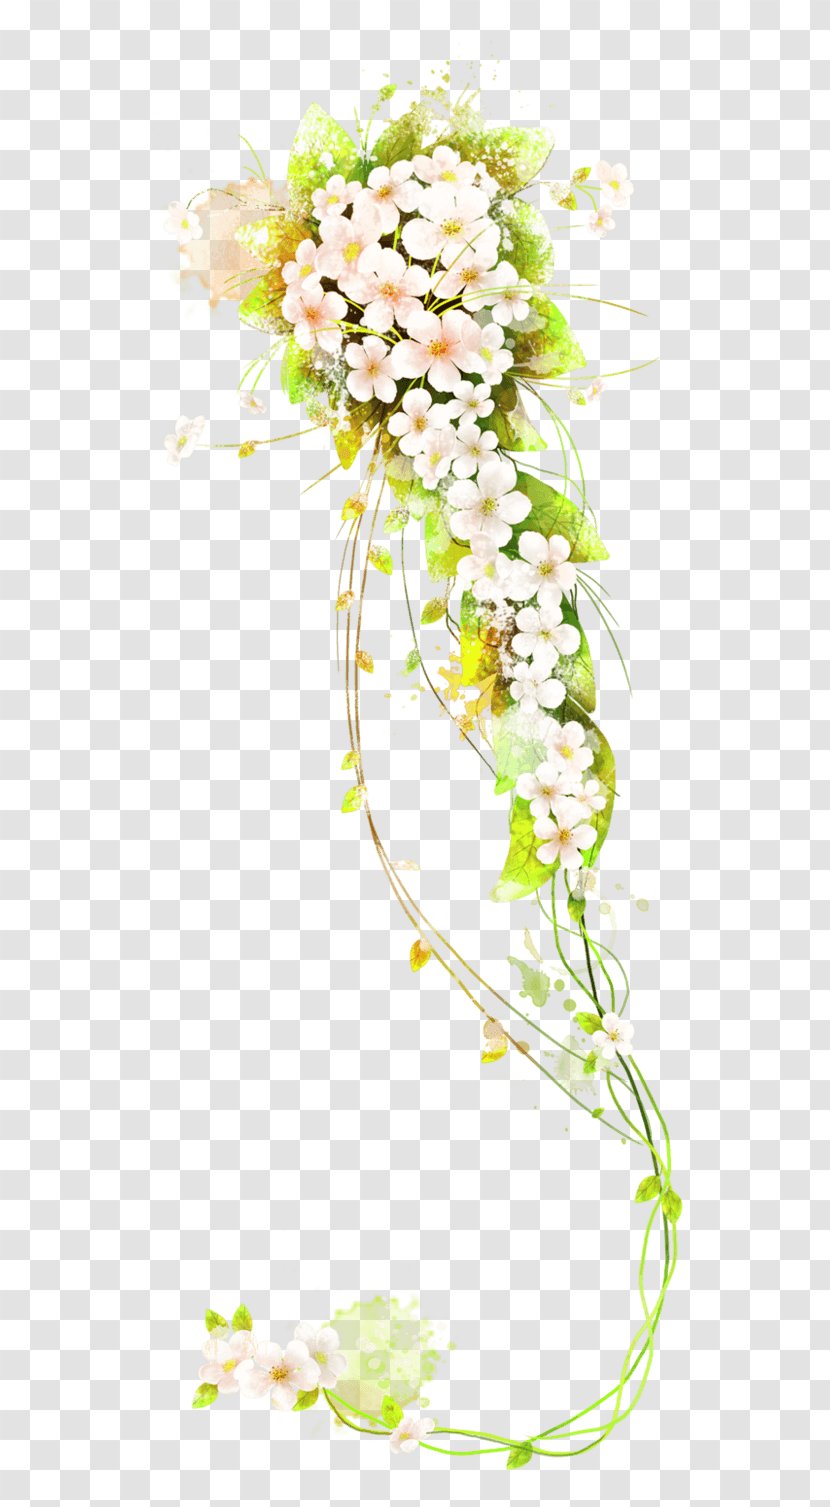 Flower Vector Graphics Illustration Image - Petal - Floral Vine Pattern Transparent PNG